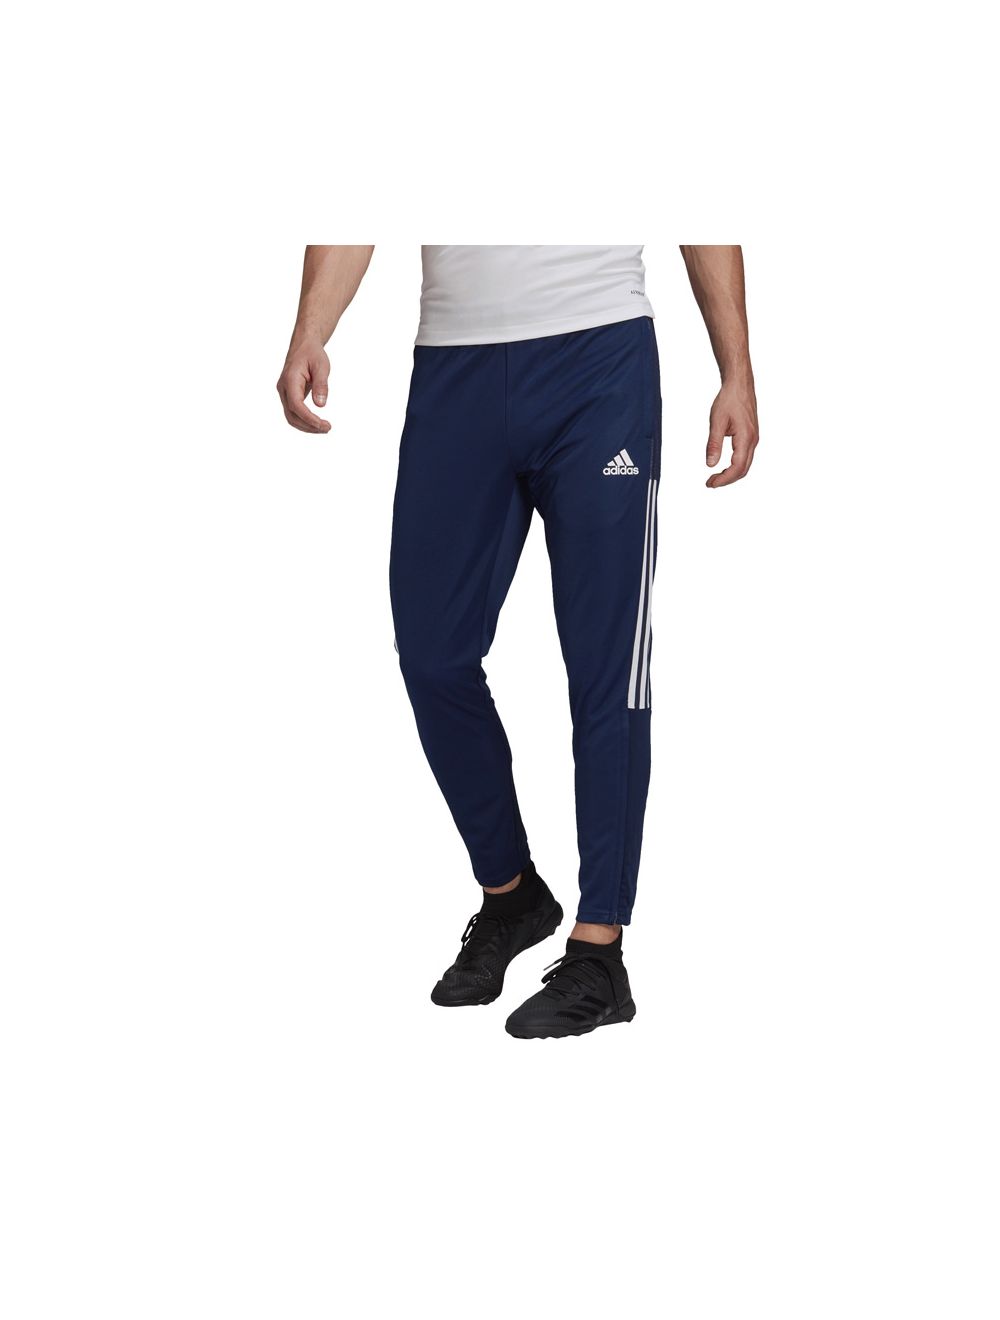 Adidas Originals FB Beckenbauer Track Pants Navy - 80s Casual Classics